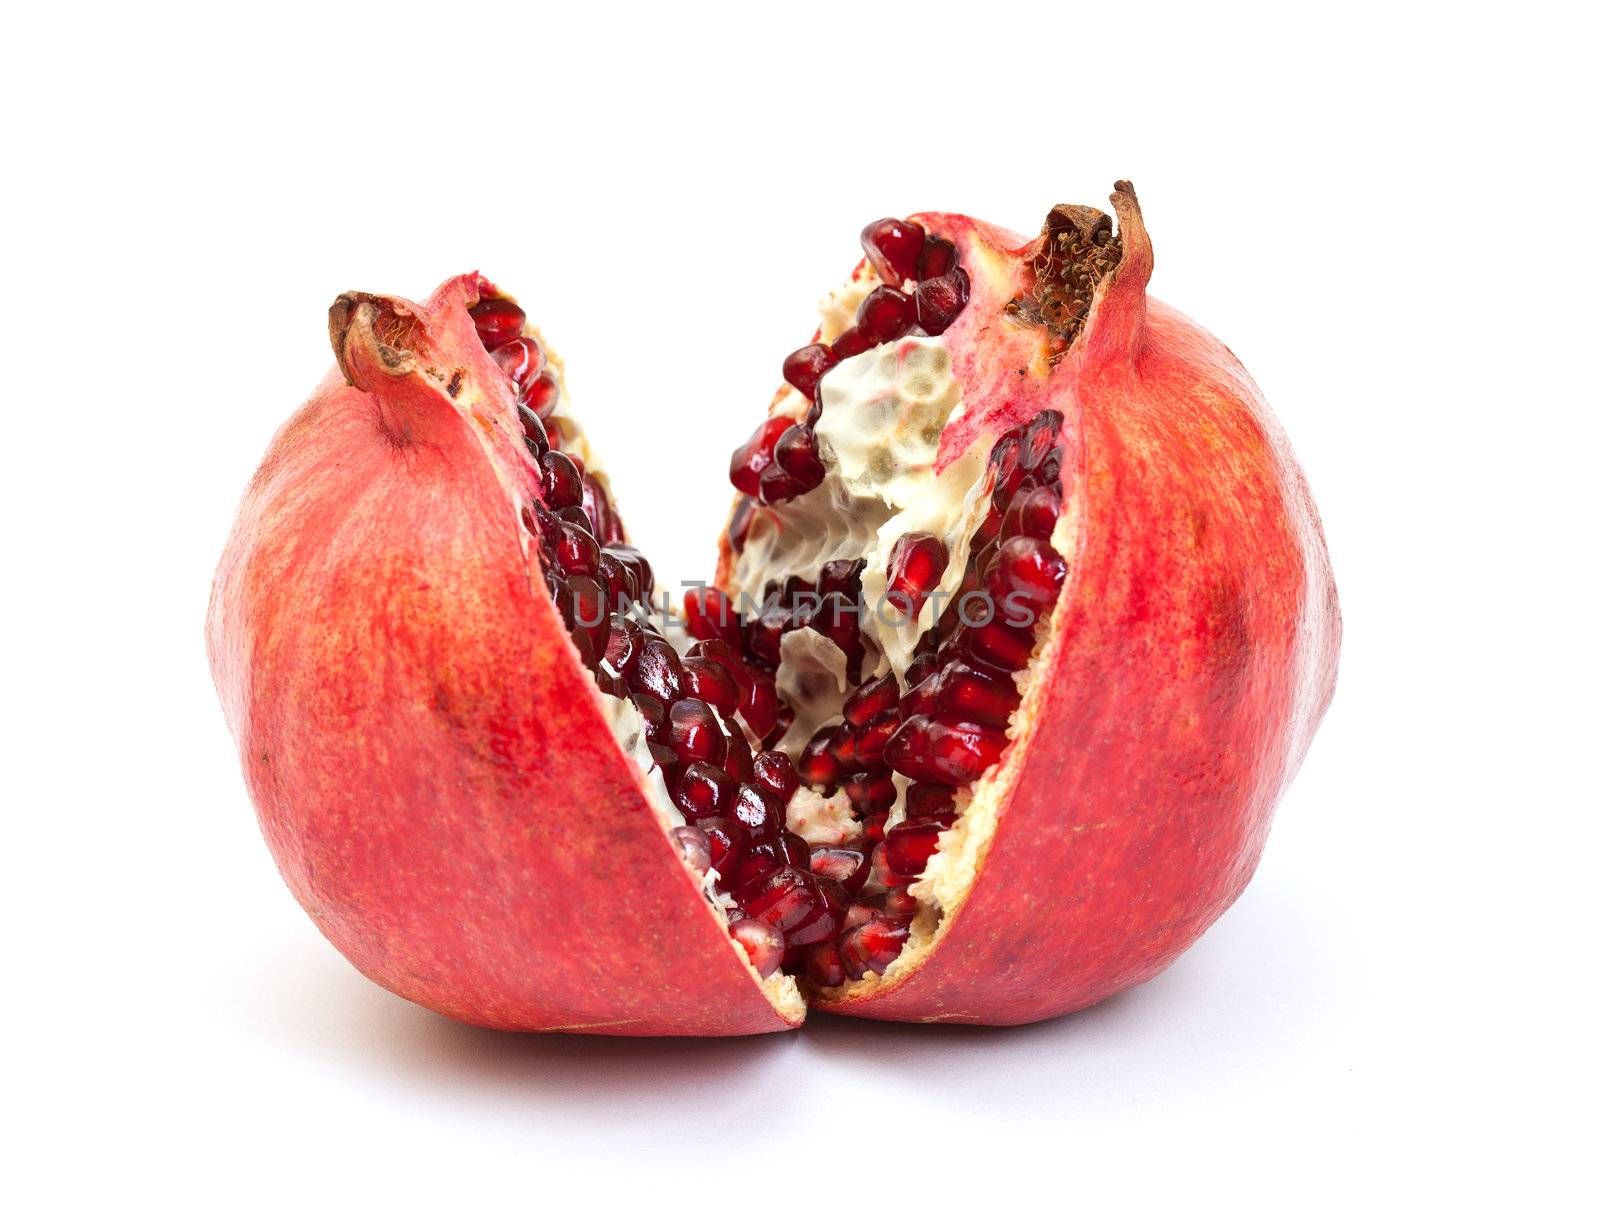 Broken pomegranate fruit by Discovod